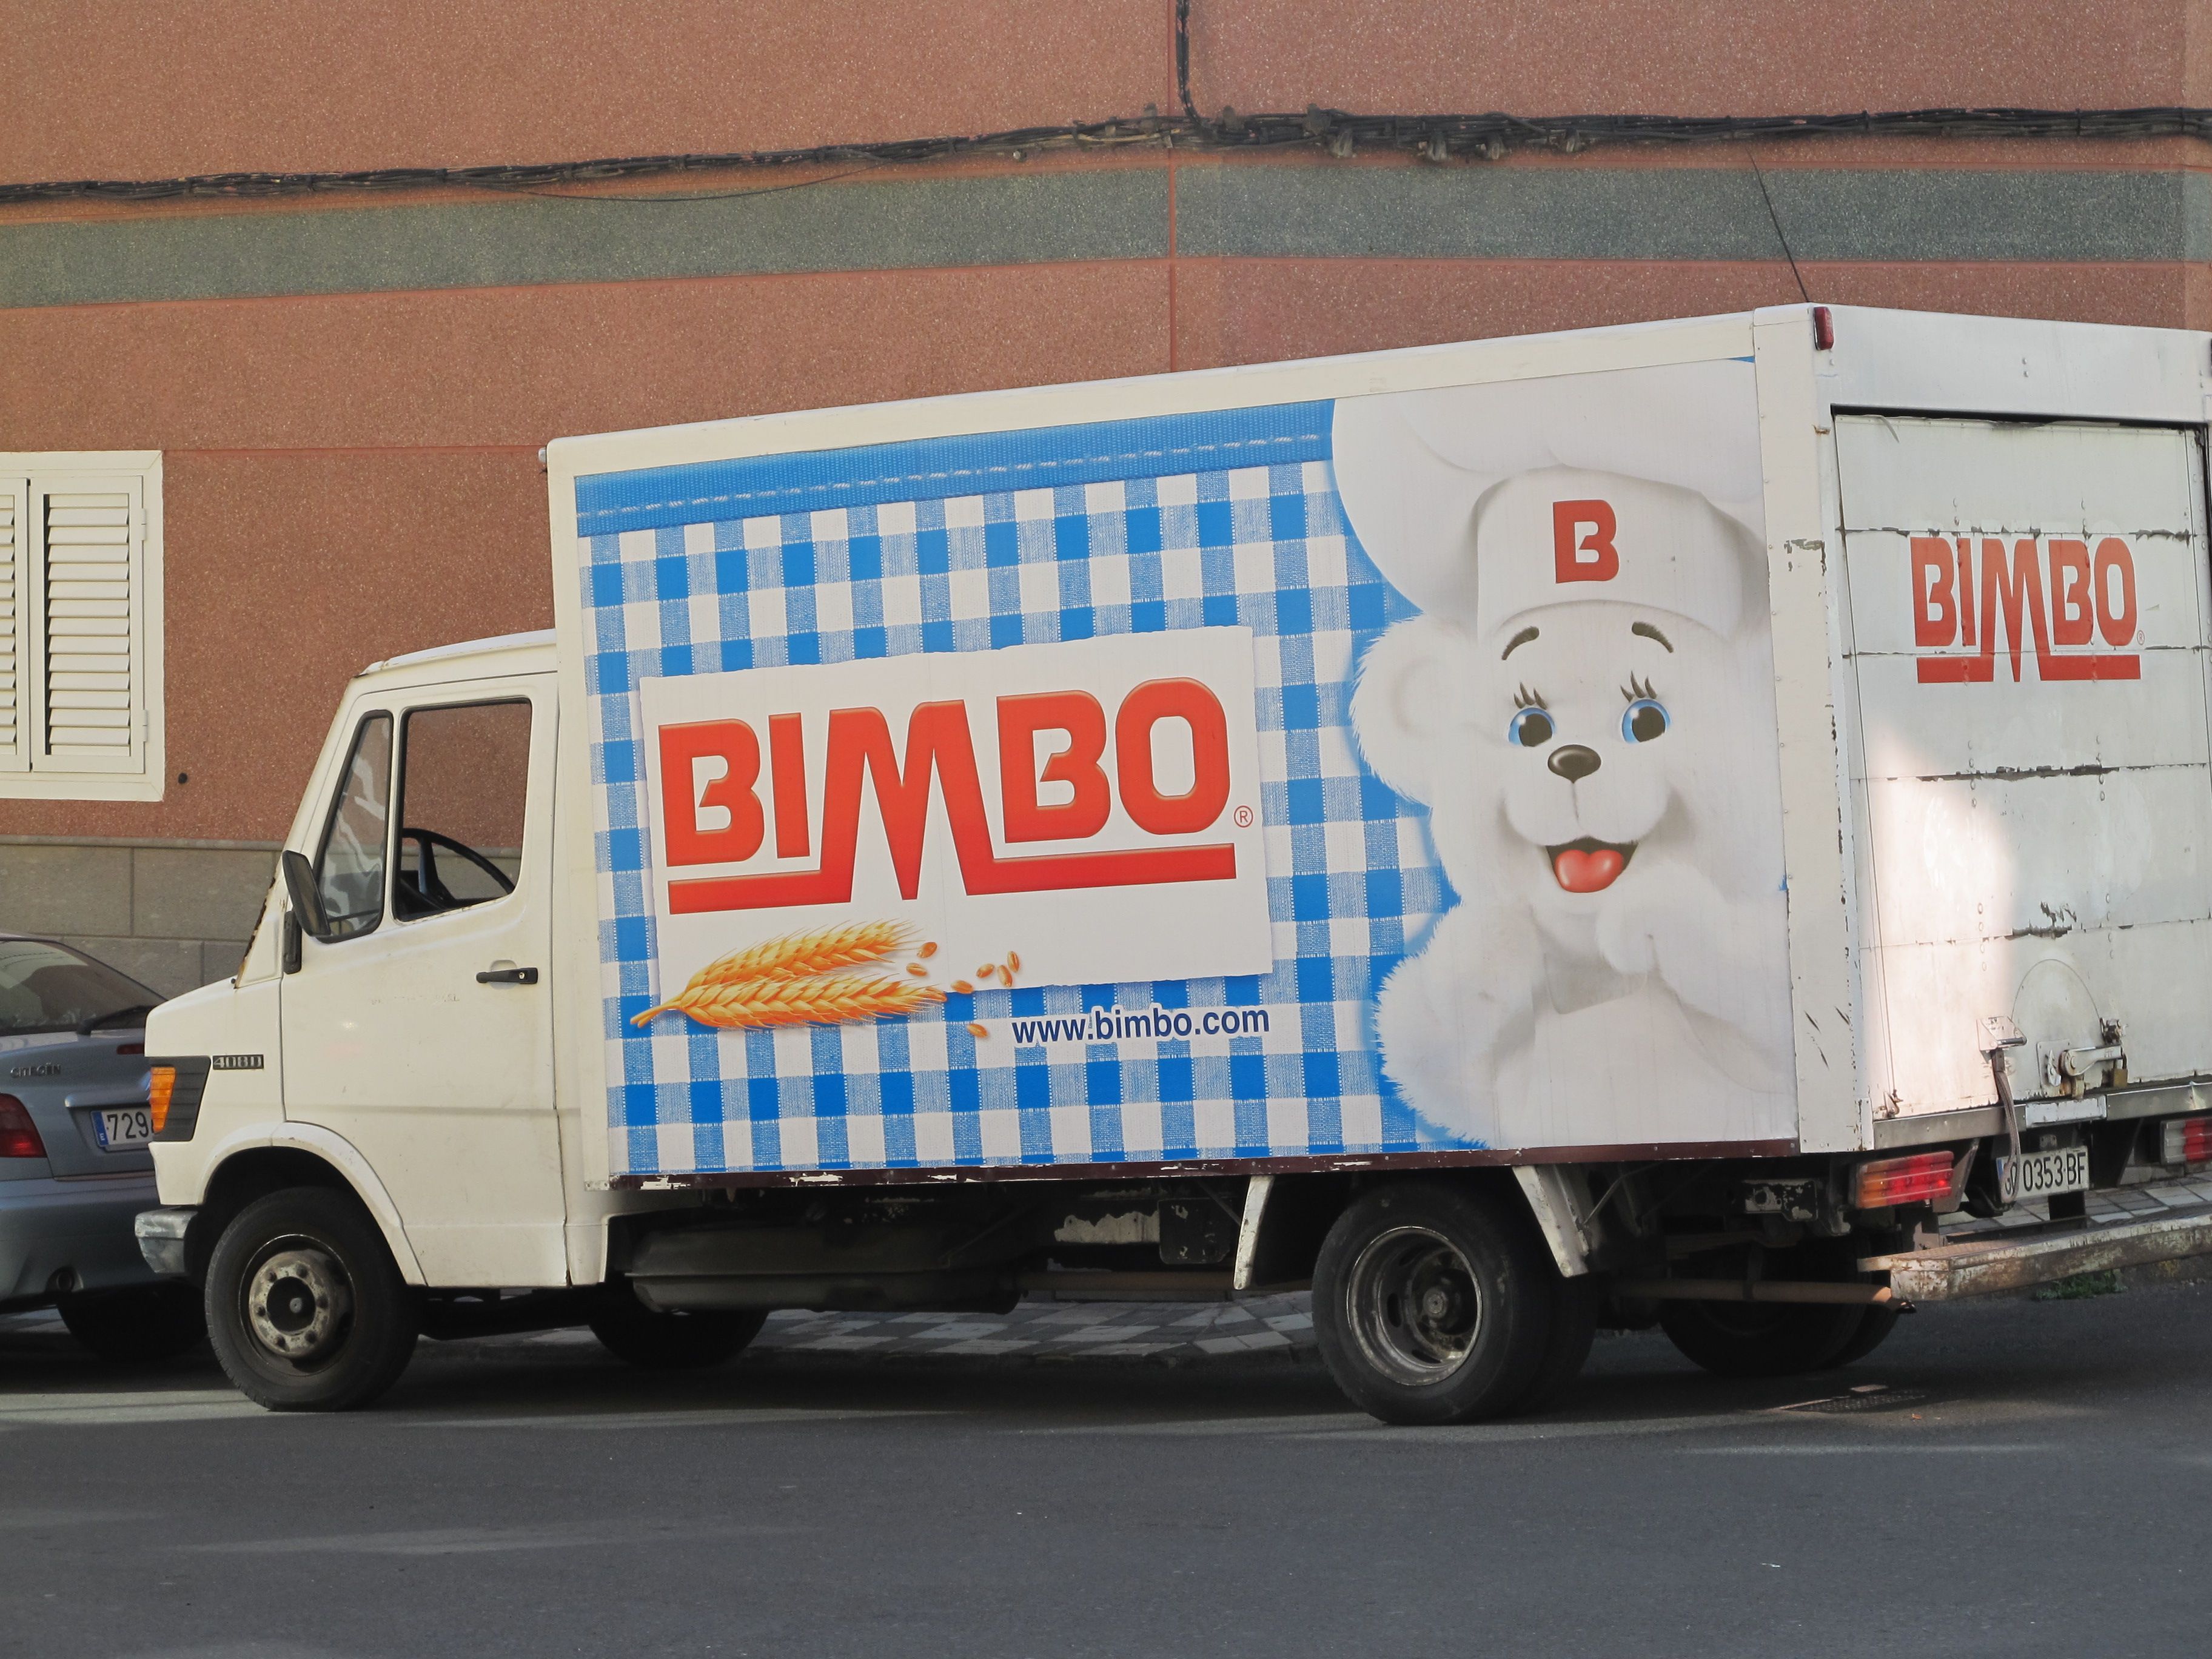 Bimbo cierra la compra de Panrico y adquiere marcas como Donuts y Bollycao